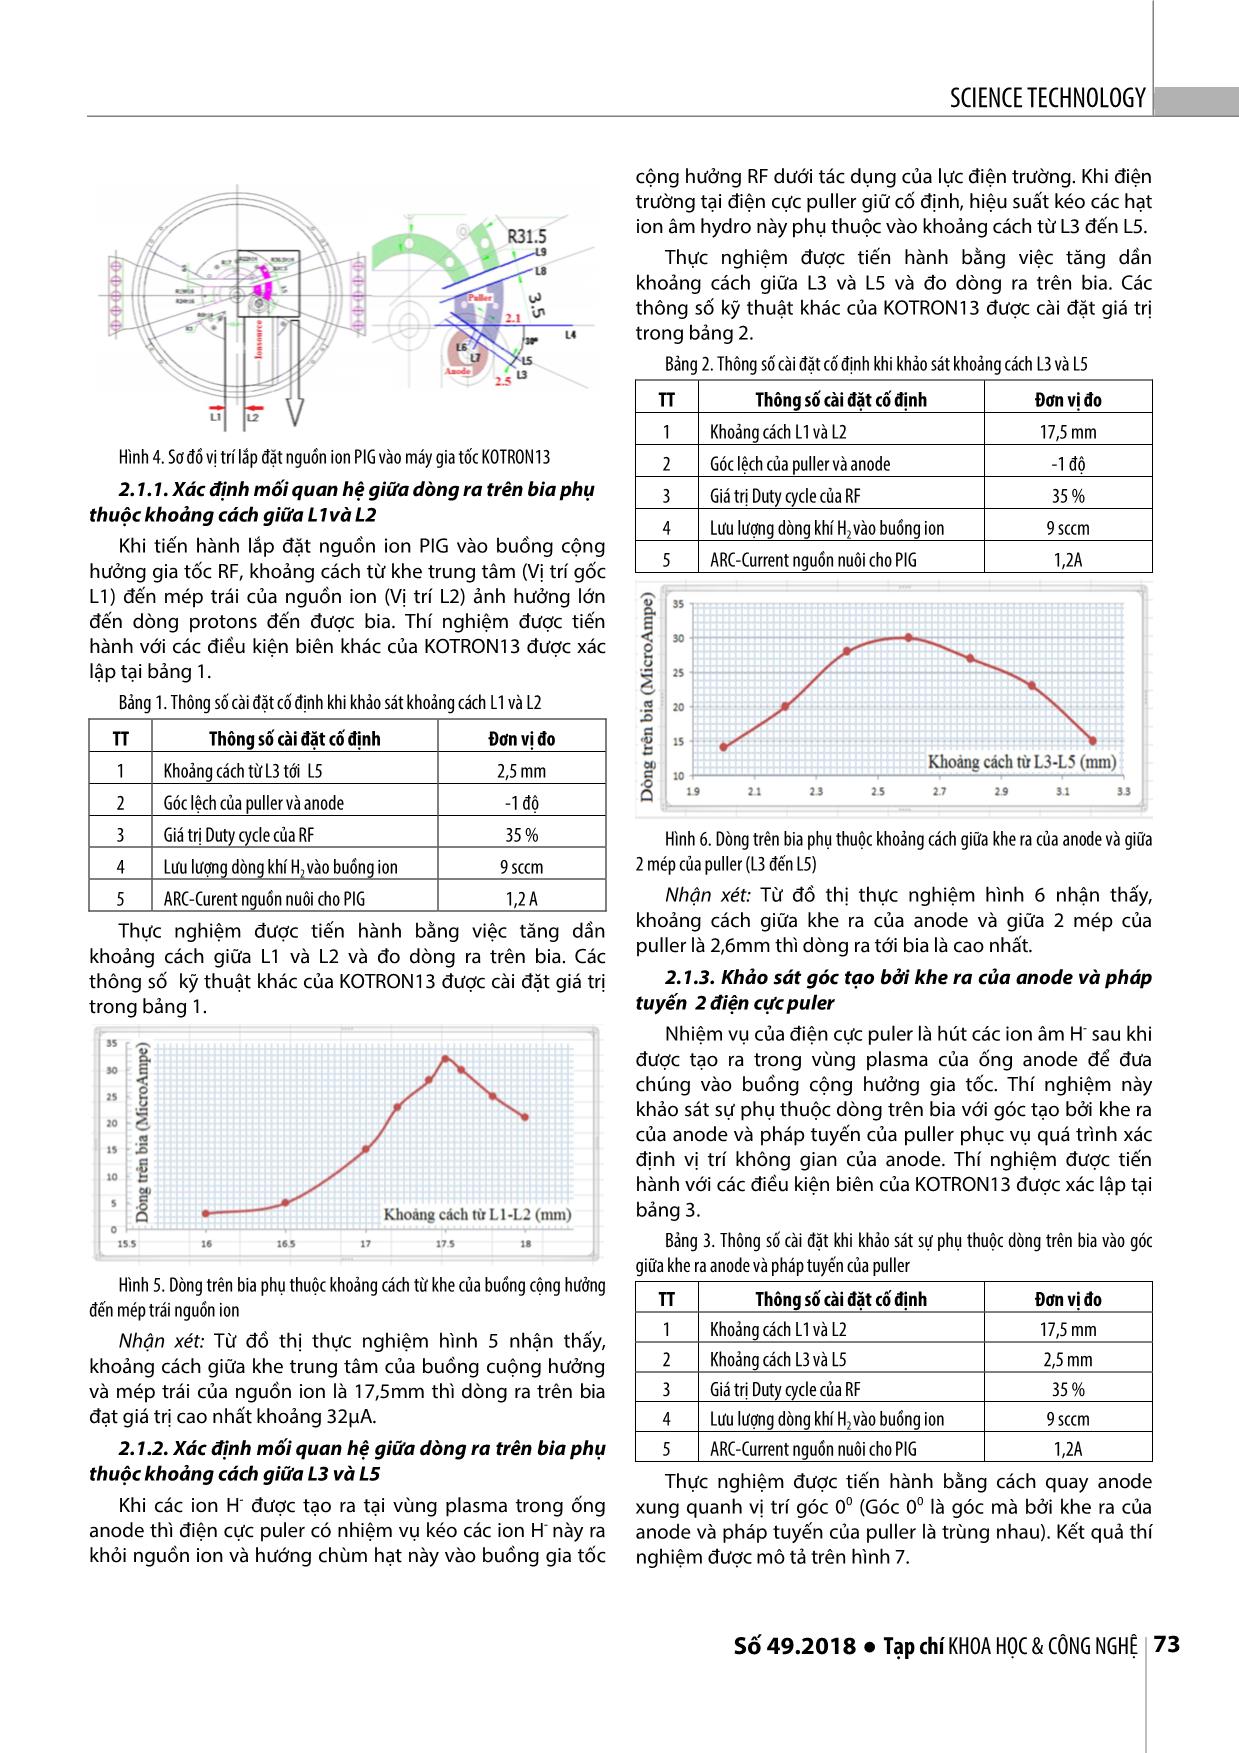 Nguyên lý hoạt động, lắp đặt và xác định thực nghiệm các thông số kỹ thuật nguồn ion pig trong máy gia tốc Cyclotron Kotron13 trang 3